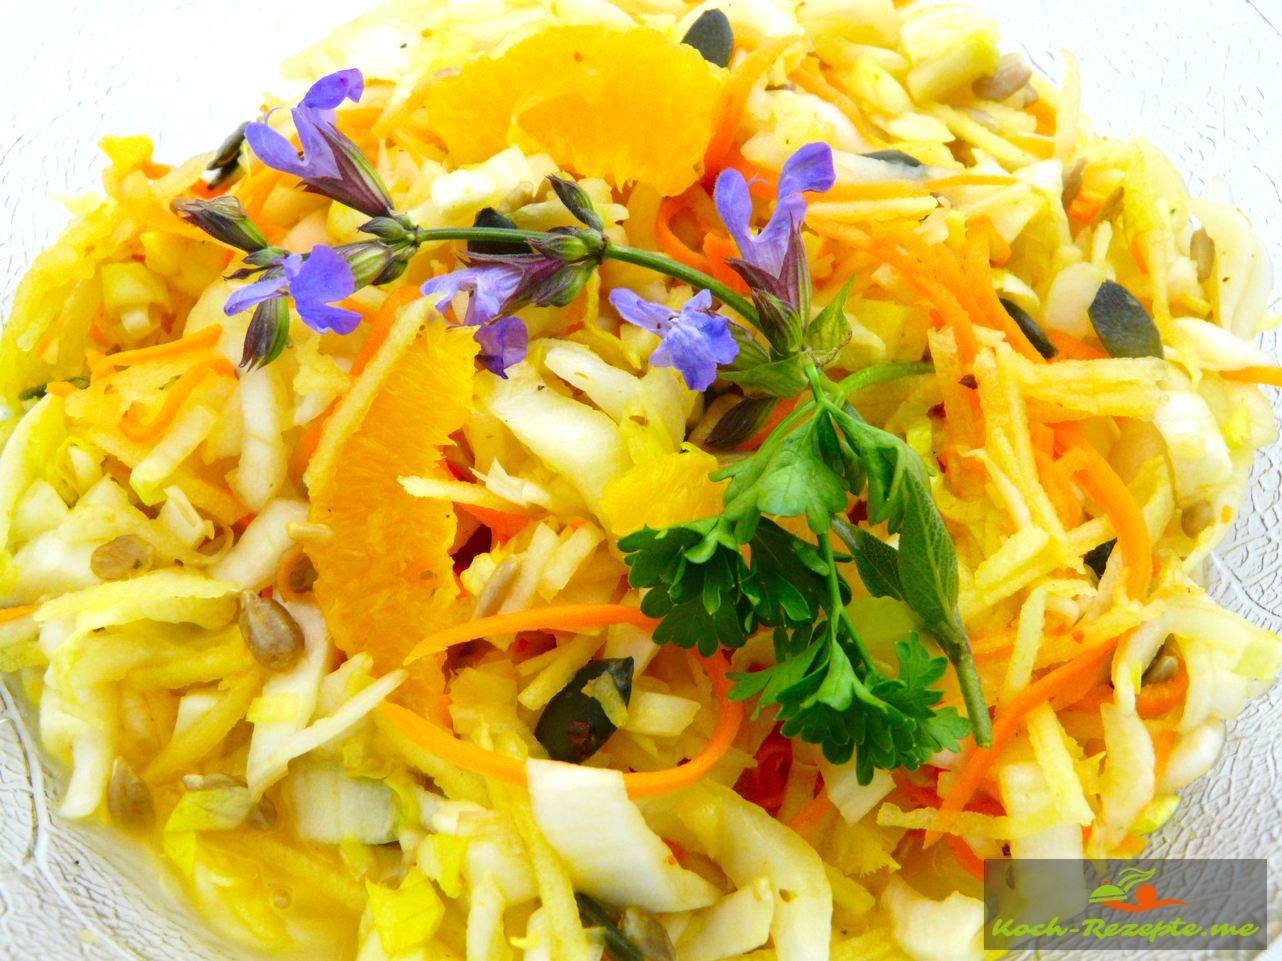 Chicorée Salat mit Früchte und Möhre lecker zubereitet